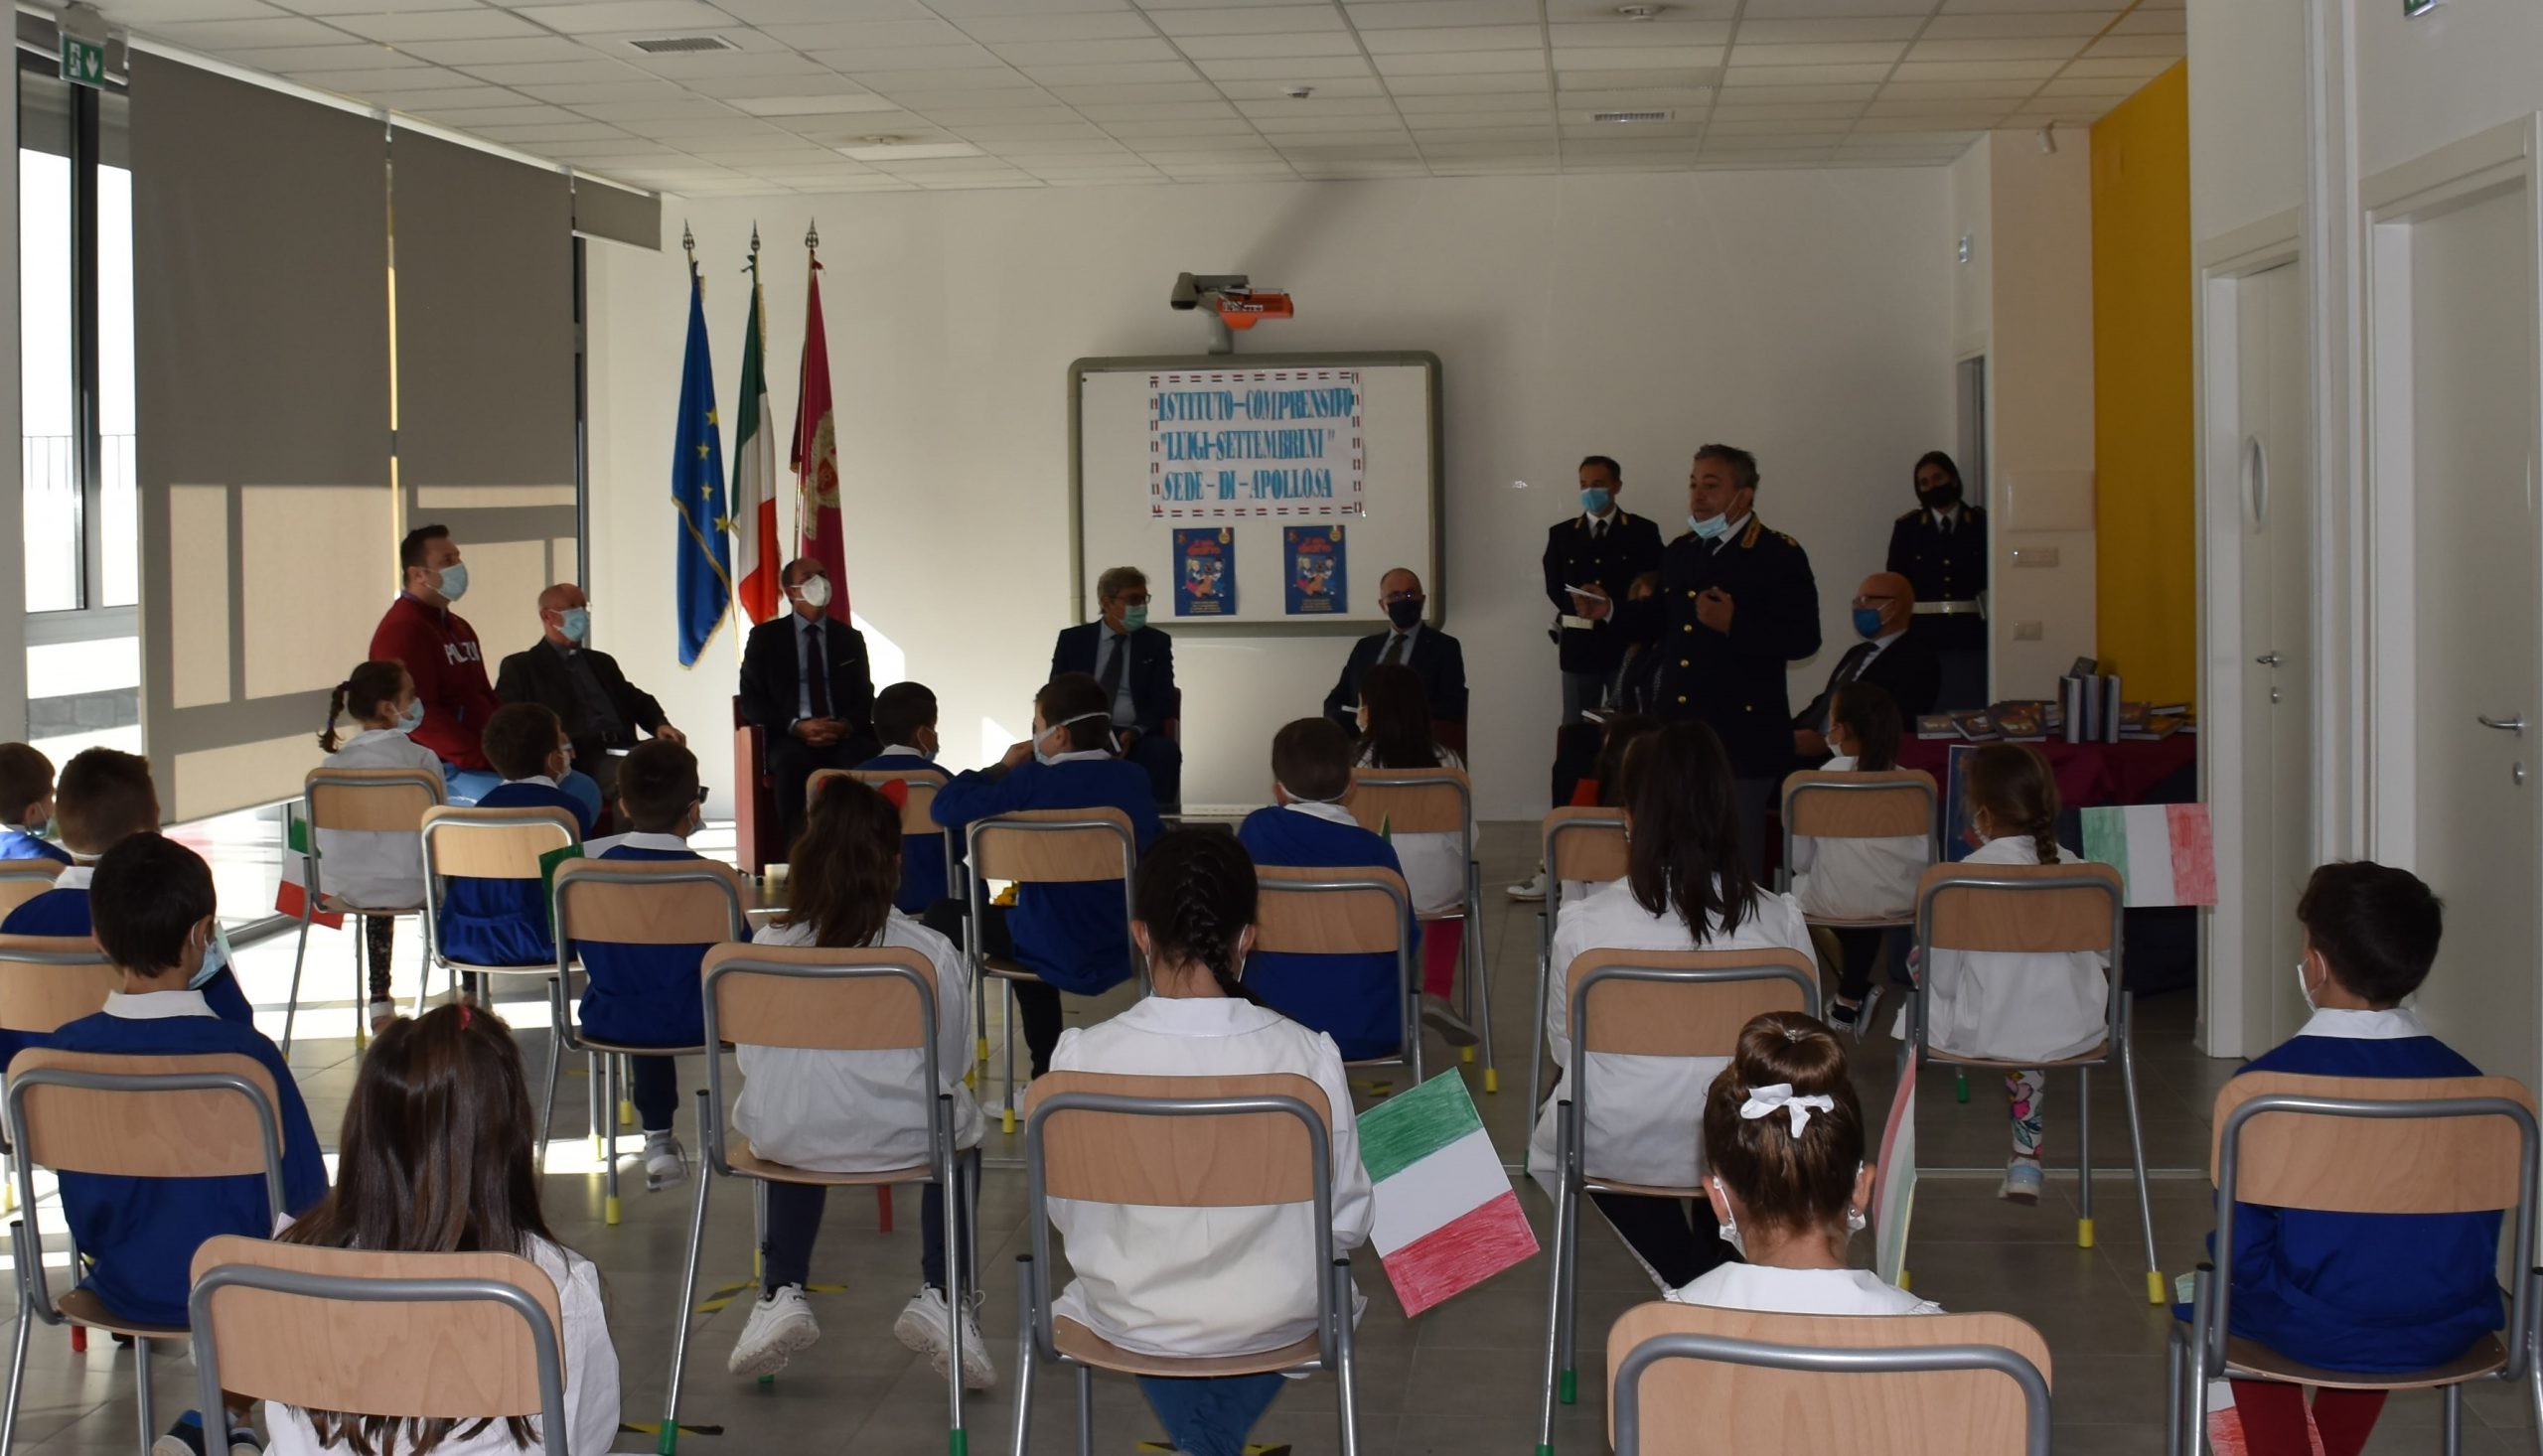 Benevento| Questura: presentazione Agenda Scolastica “Il Mio Diario”